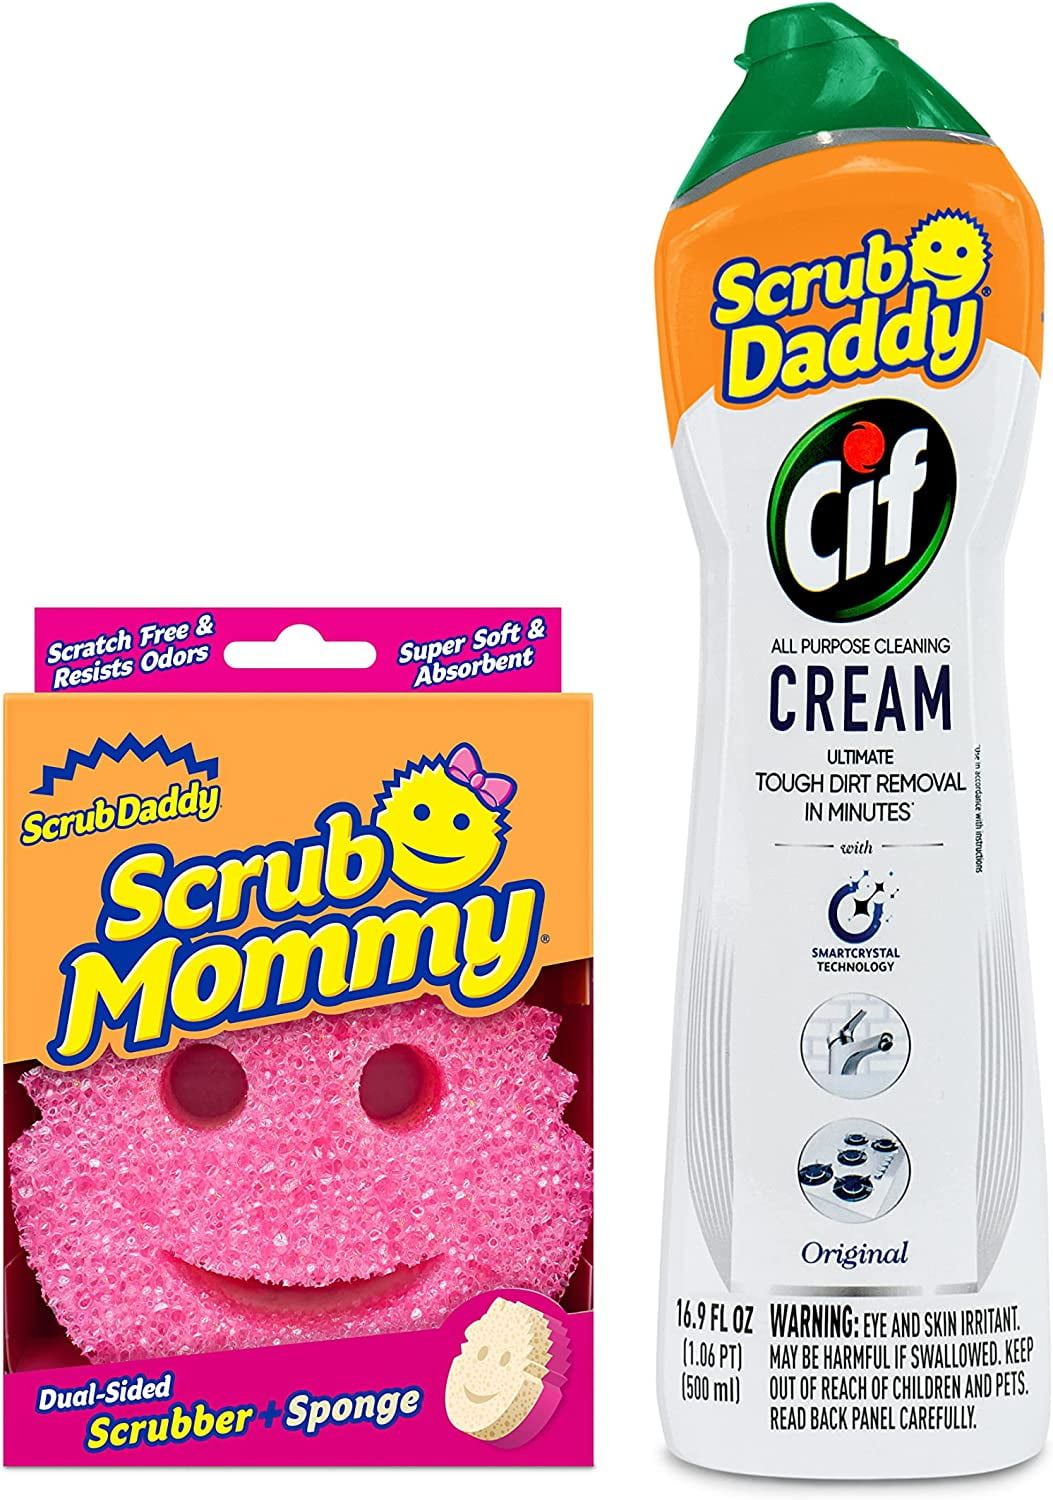 Scrub Daddy Scrub Daddy Cif 16.9 oz. All Purpose Cream Original Scent  850035181027 - The Home Depot